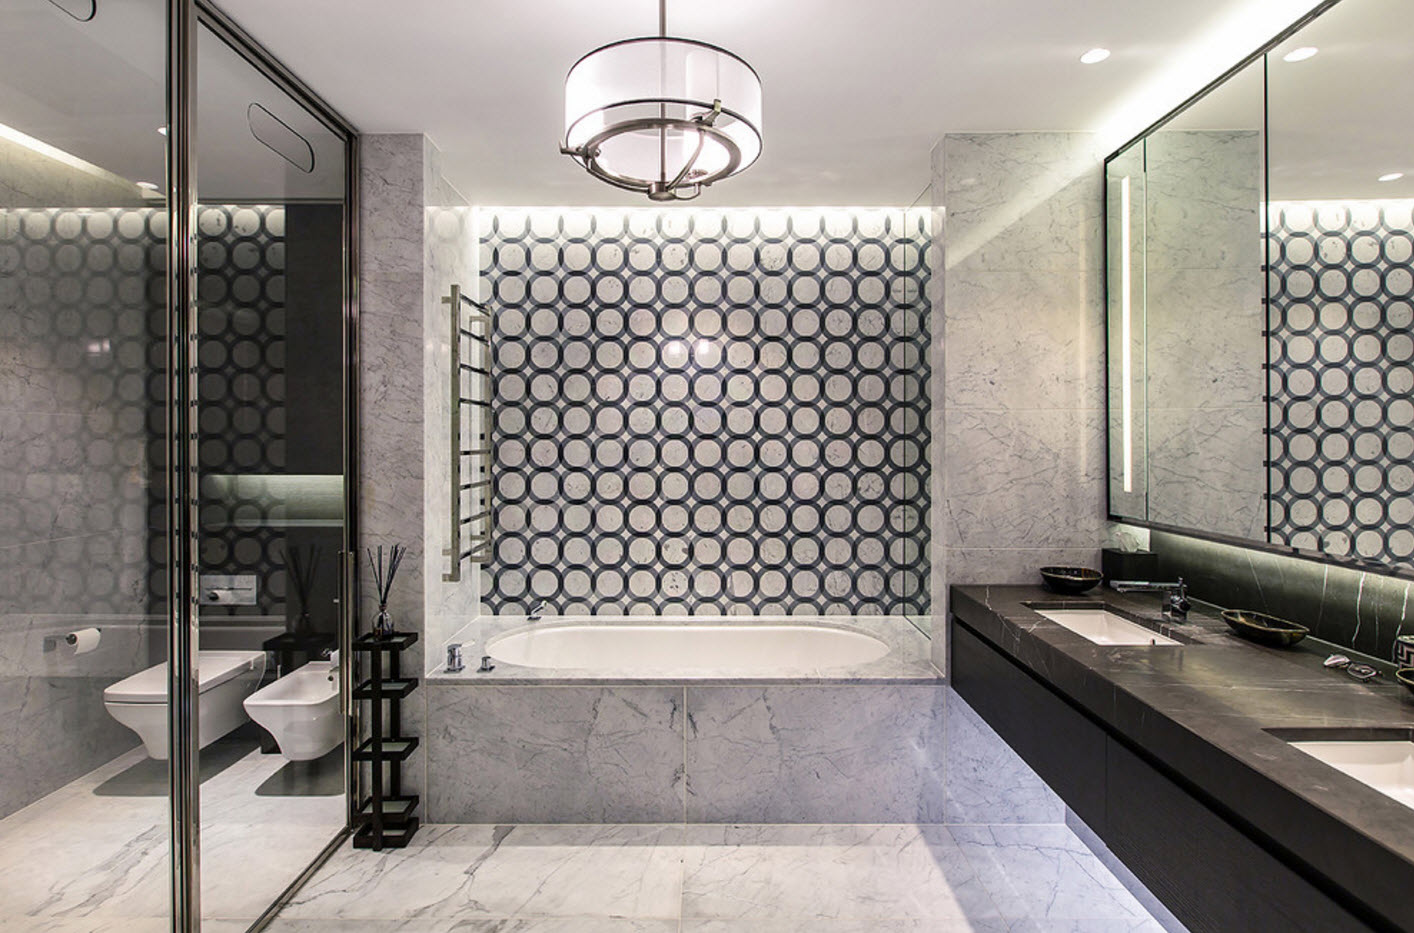 σχεδιασμός μπάνιου με γεωμετρικά σχέδια τουαλέτας